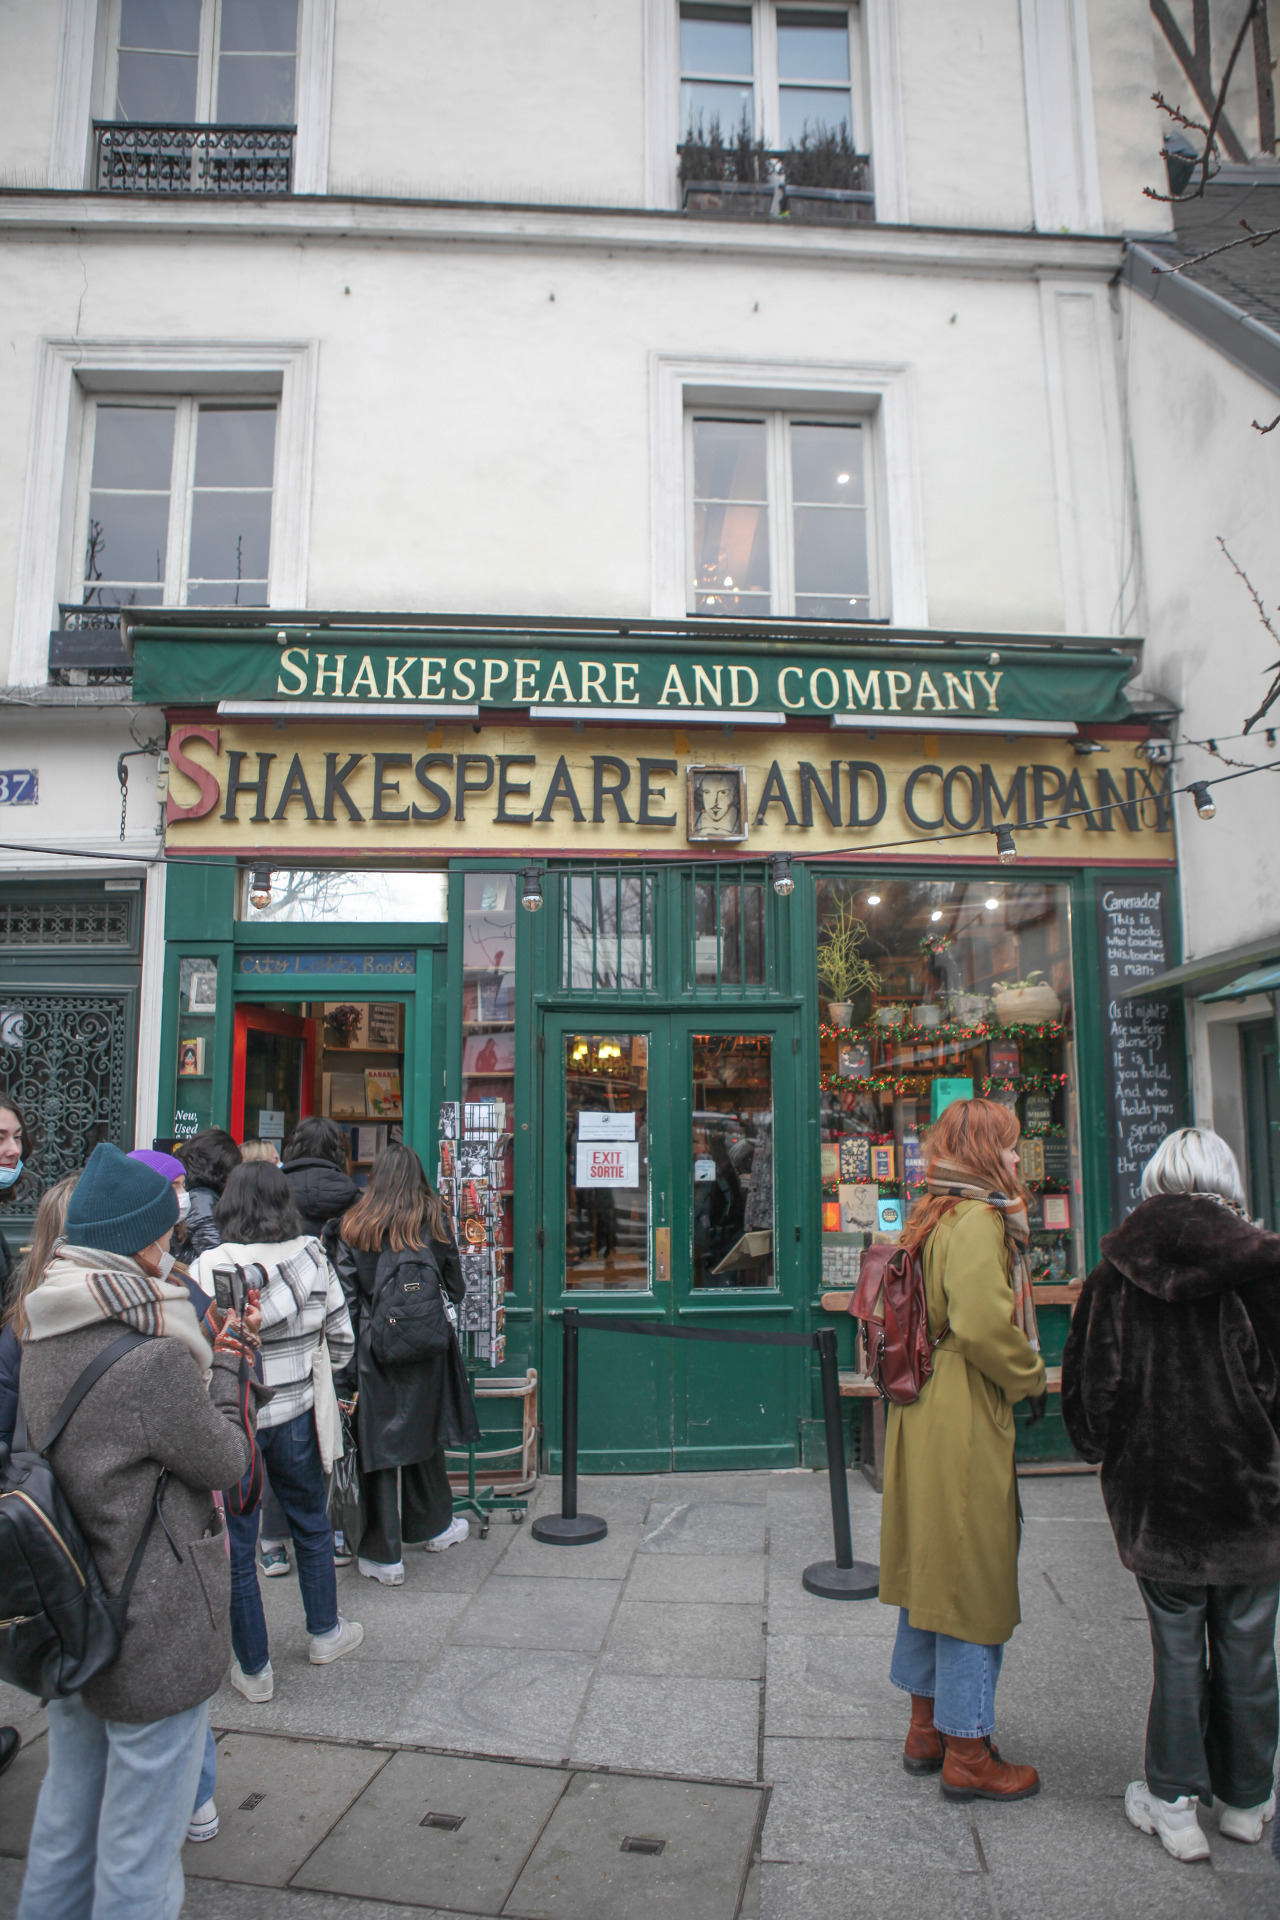 셰익스피어 앤드 컴퍼니(Shakespeare and Company)에는 많은 이야기를 읽고, 들을 수 있다.